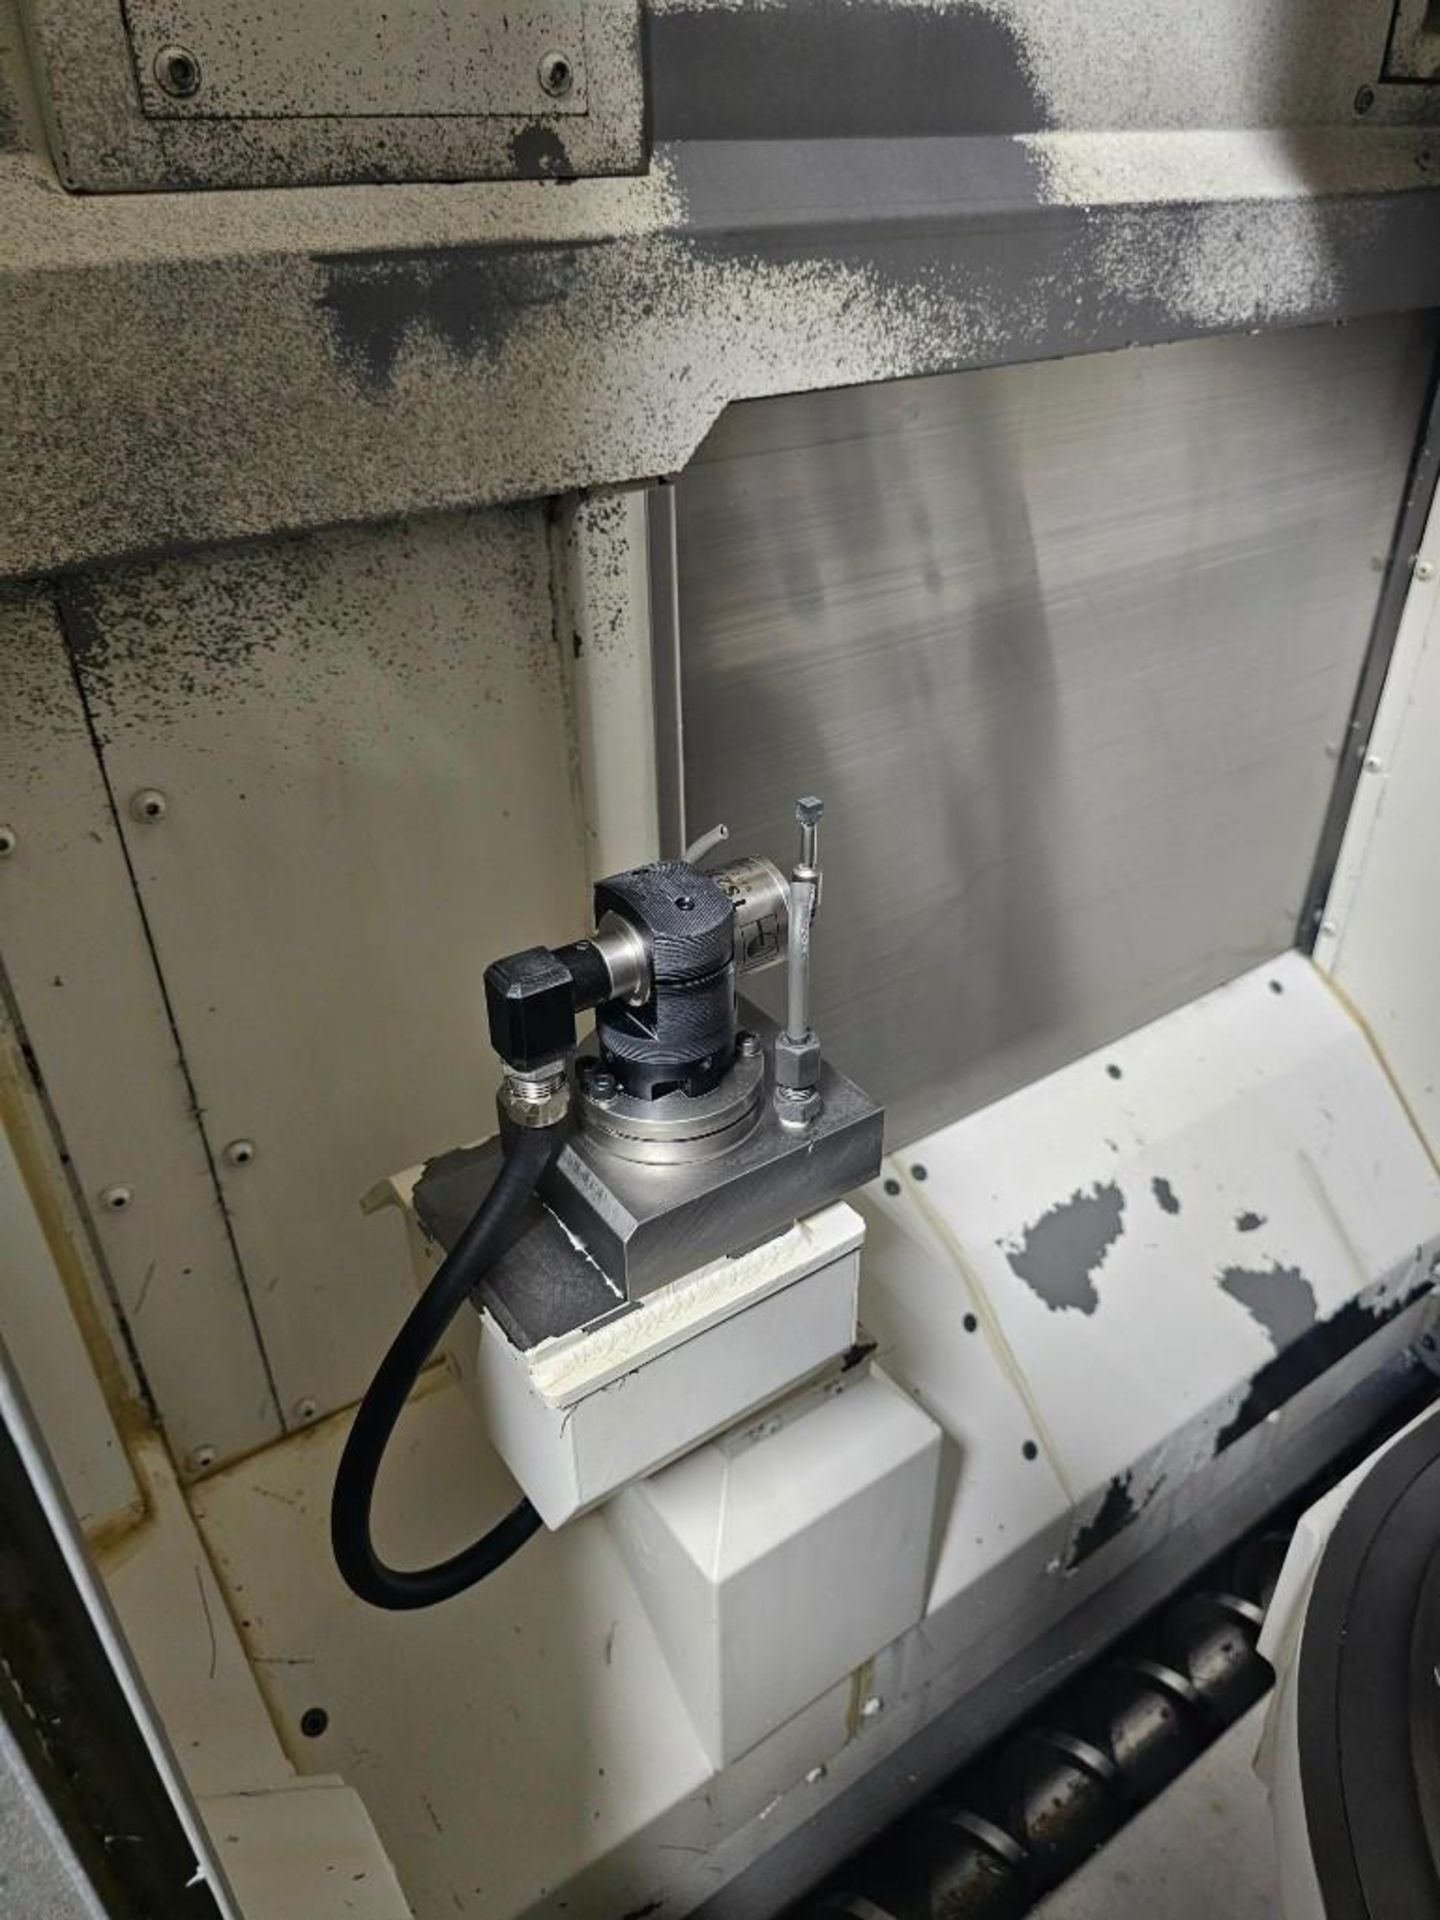 2017 OKUMA MU-4000V 5-AXIS CNC VERTICAL MACHINING CENTER - Image 10 of 20